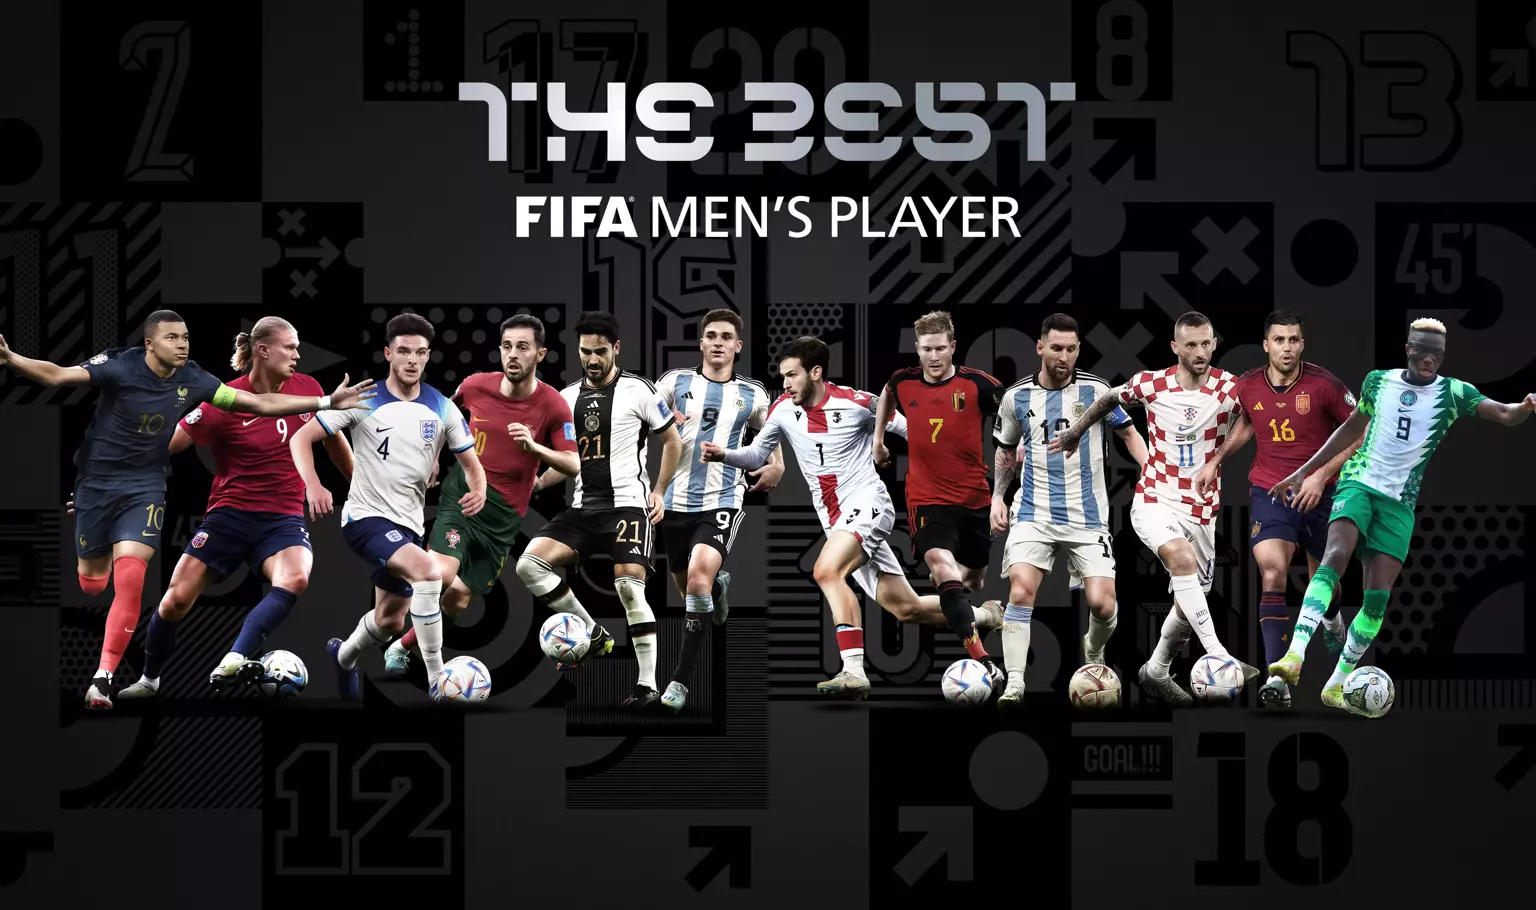 Fifa anuncia os finalistas ao prêmio de melhor goleiro do mundo